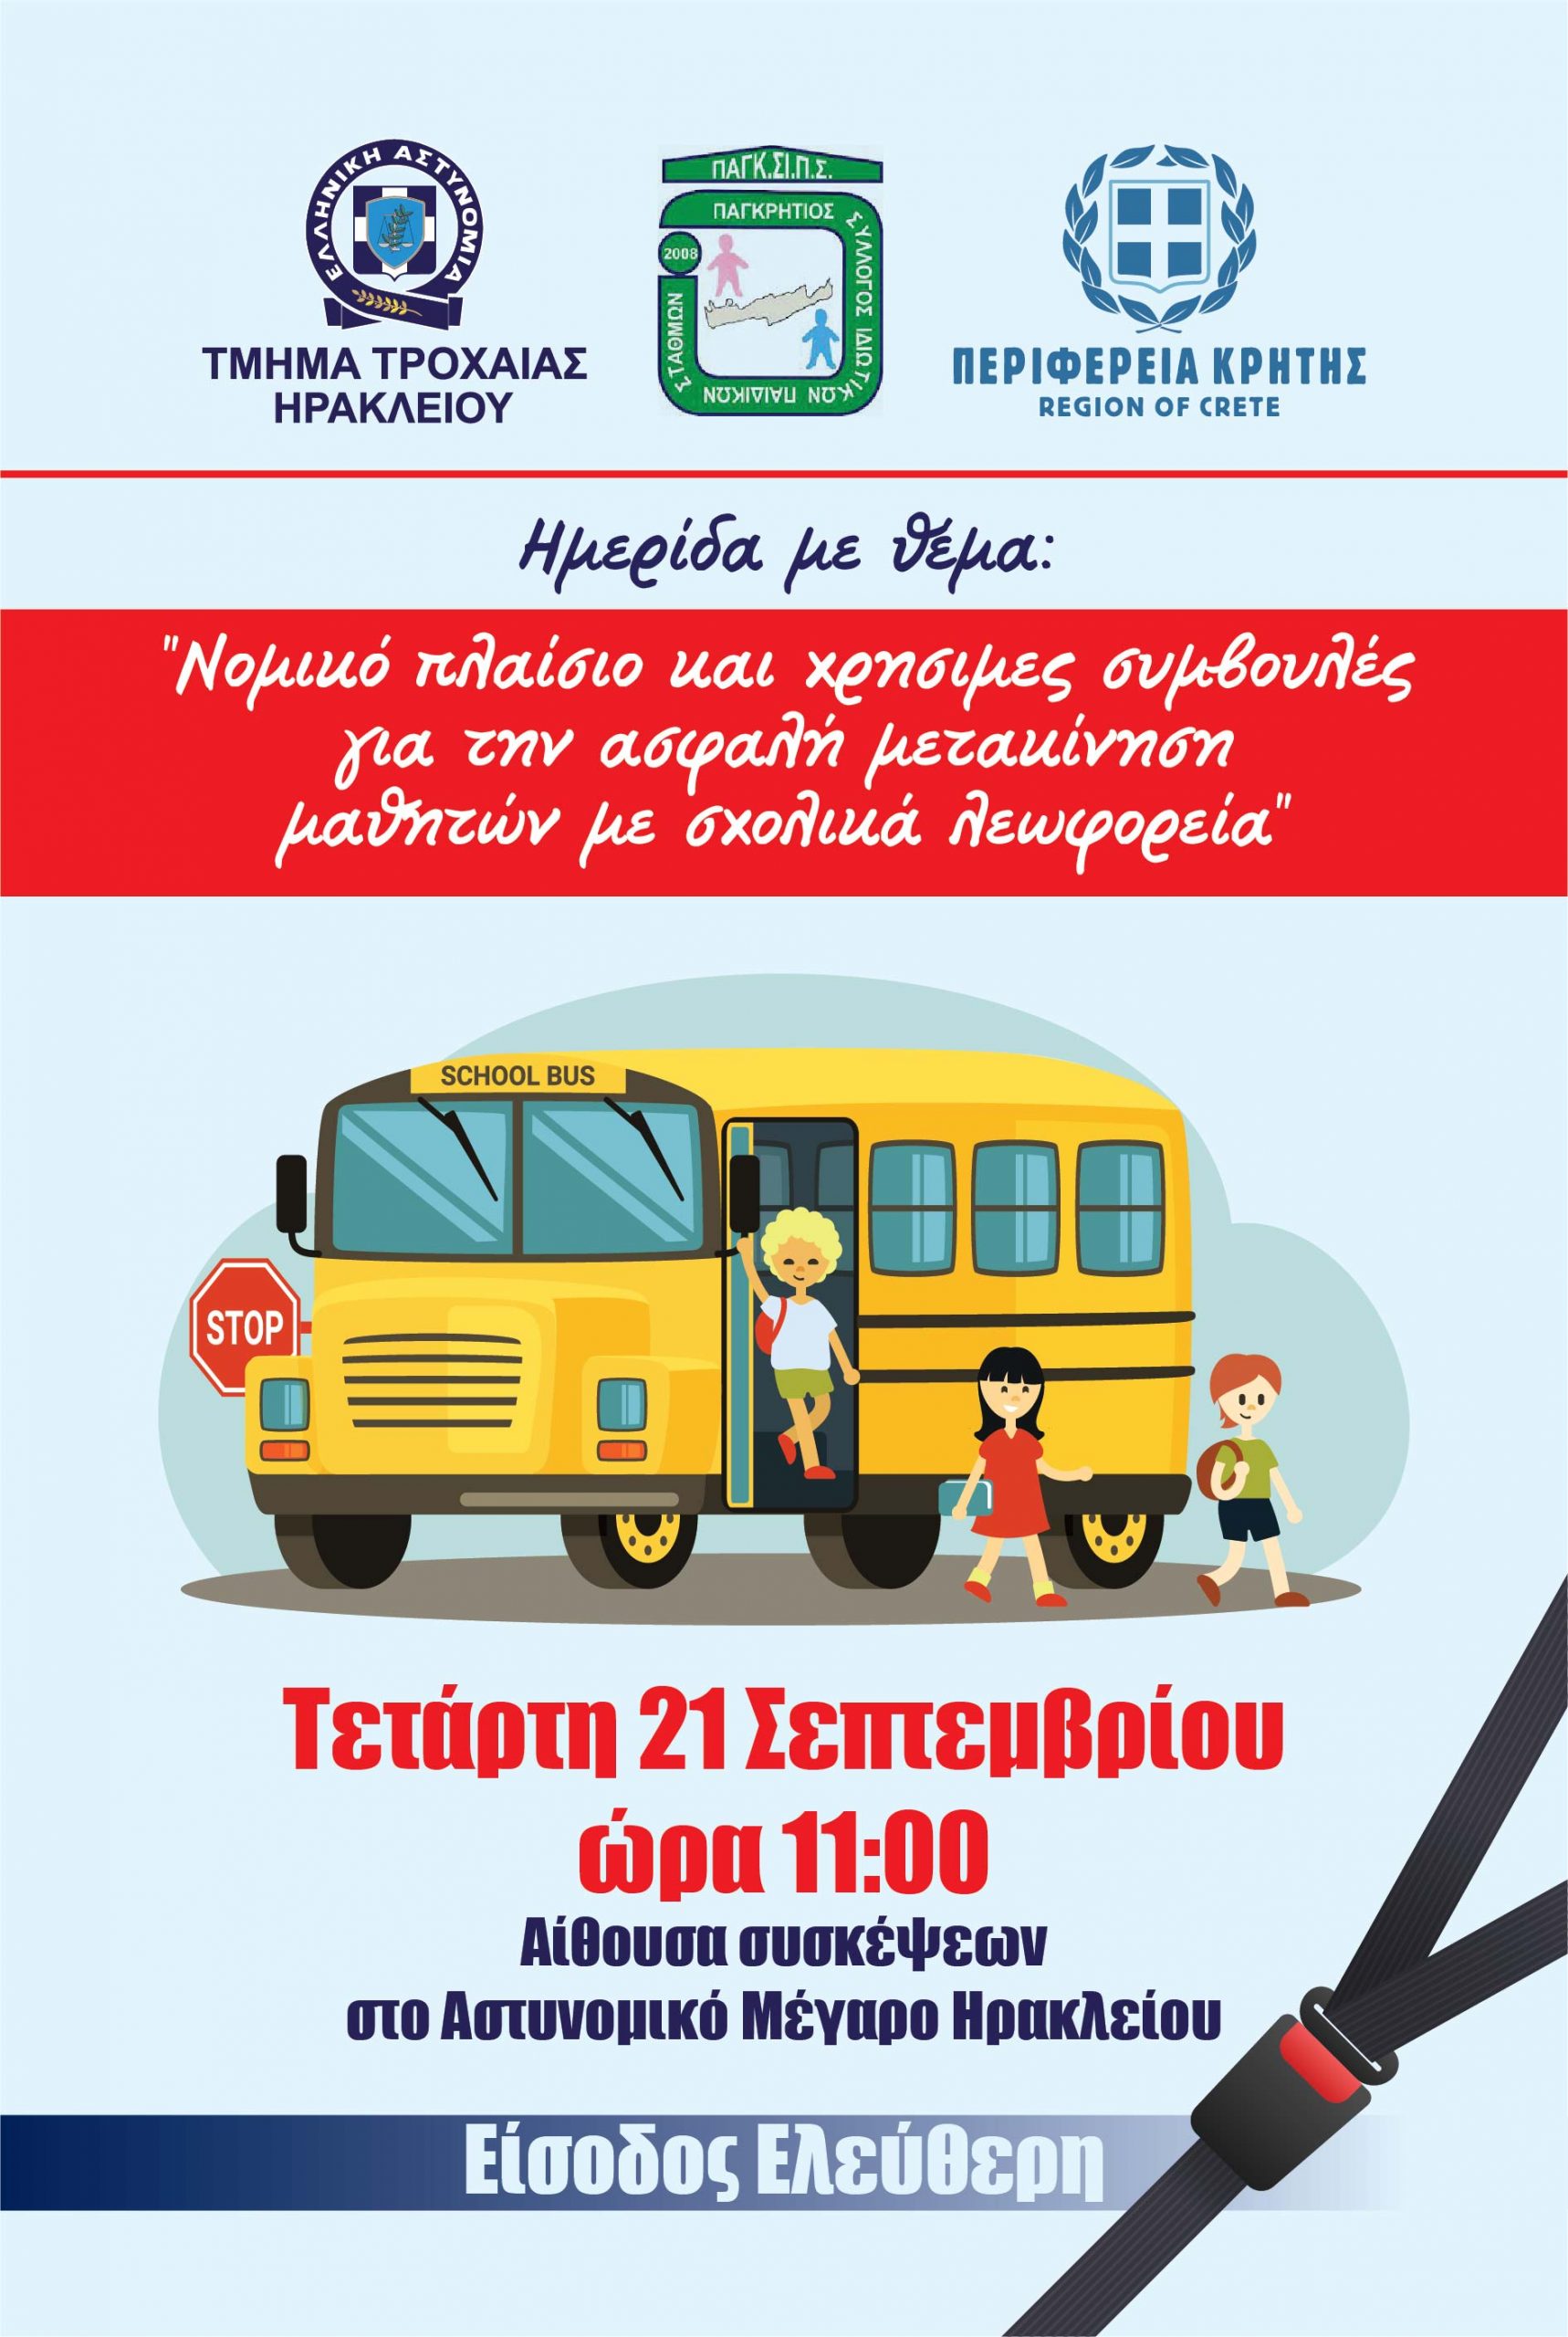 Τροχαία Ηρακλείου: Hμερίδα για “Νομικό πλαίσιο και χρήσιμες συμβουλές για την ασφαλή μετακίνηση μαθητών με σχολικά λεωφορεία”